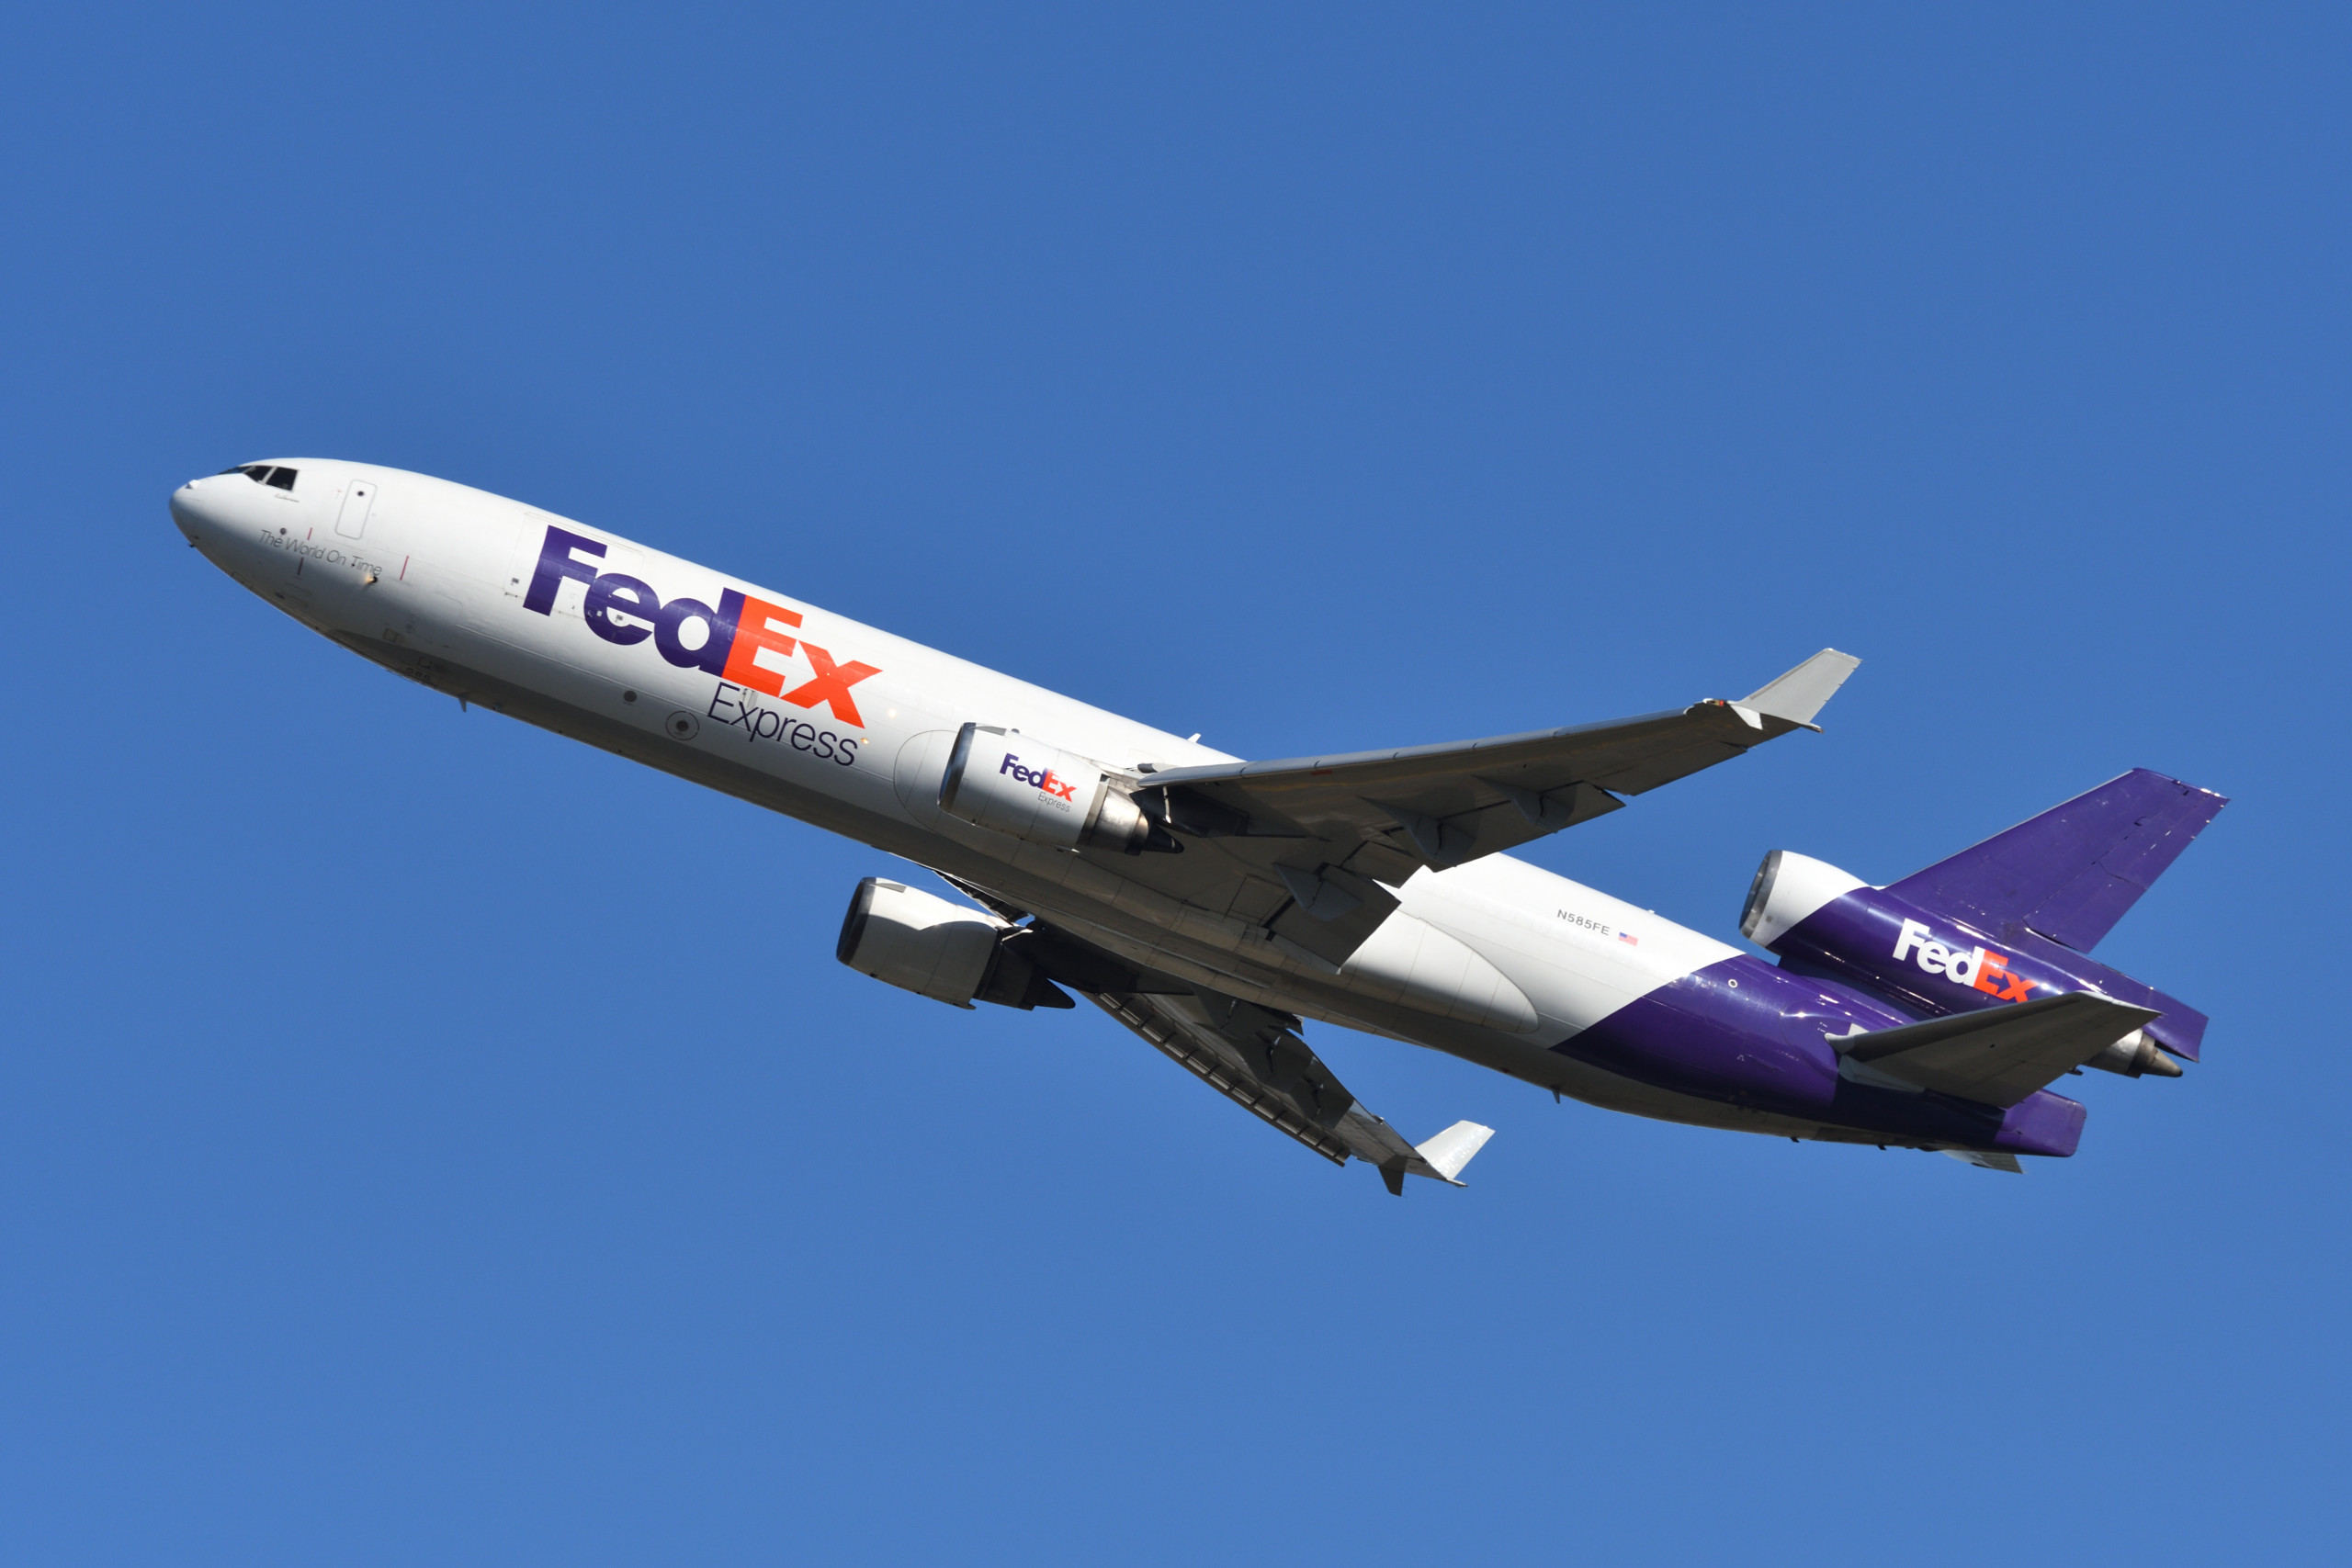 FedEx plant weitere Kostensenkungen, da die schwache Nachfrage die Gewinne beeinträchtigt!